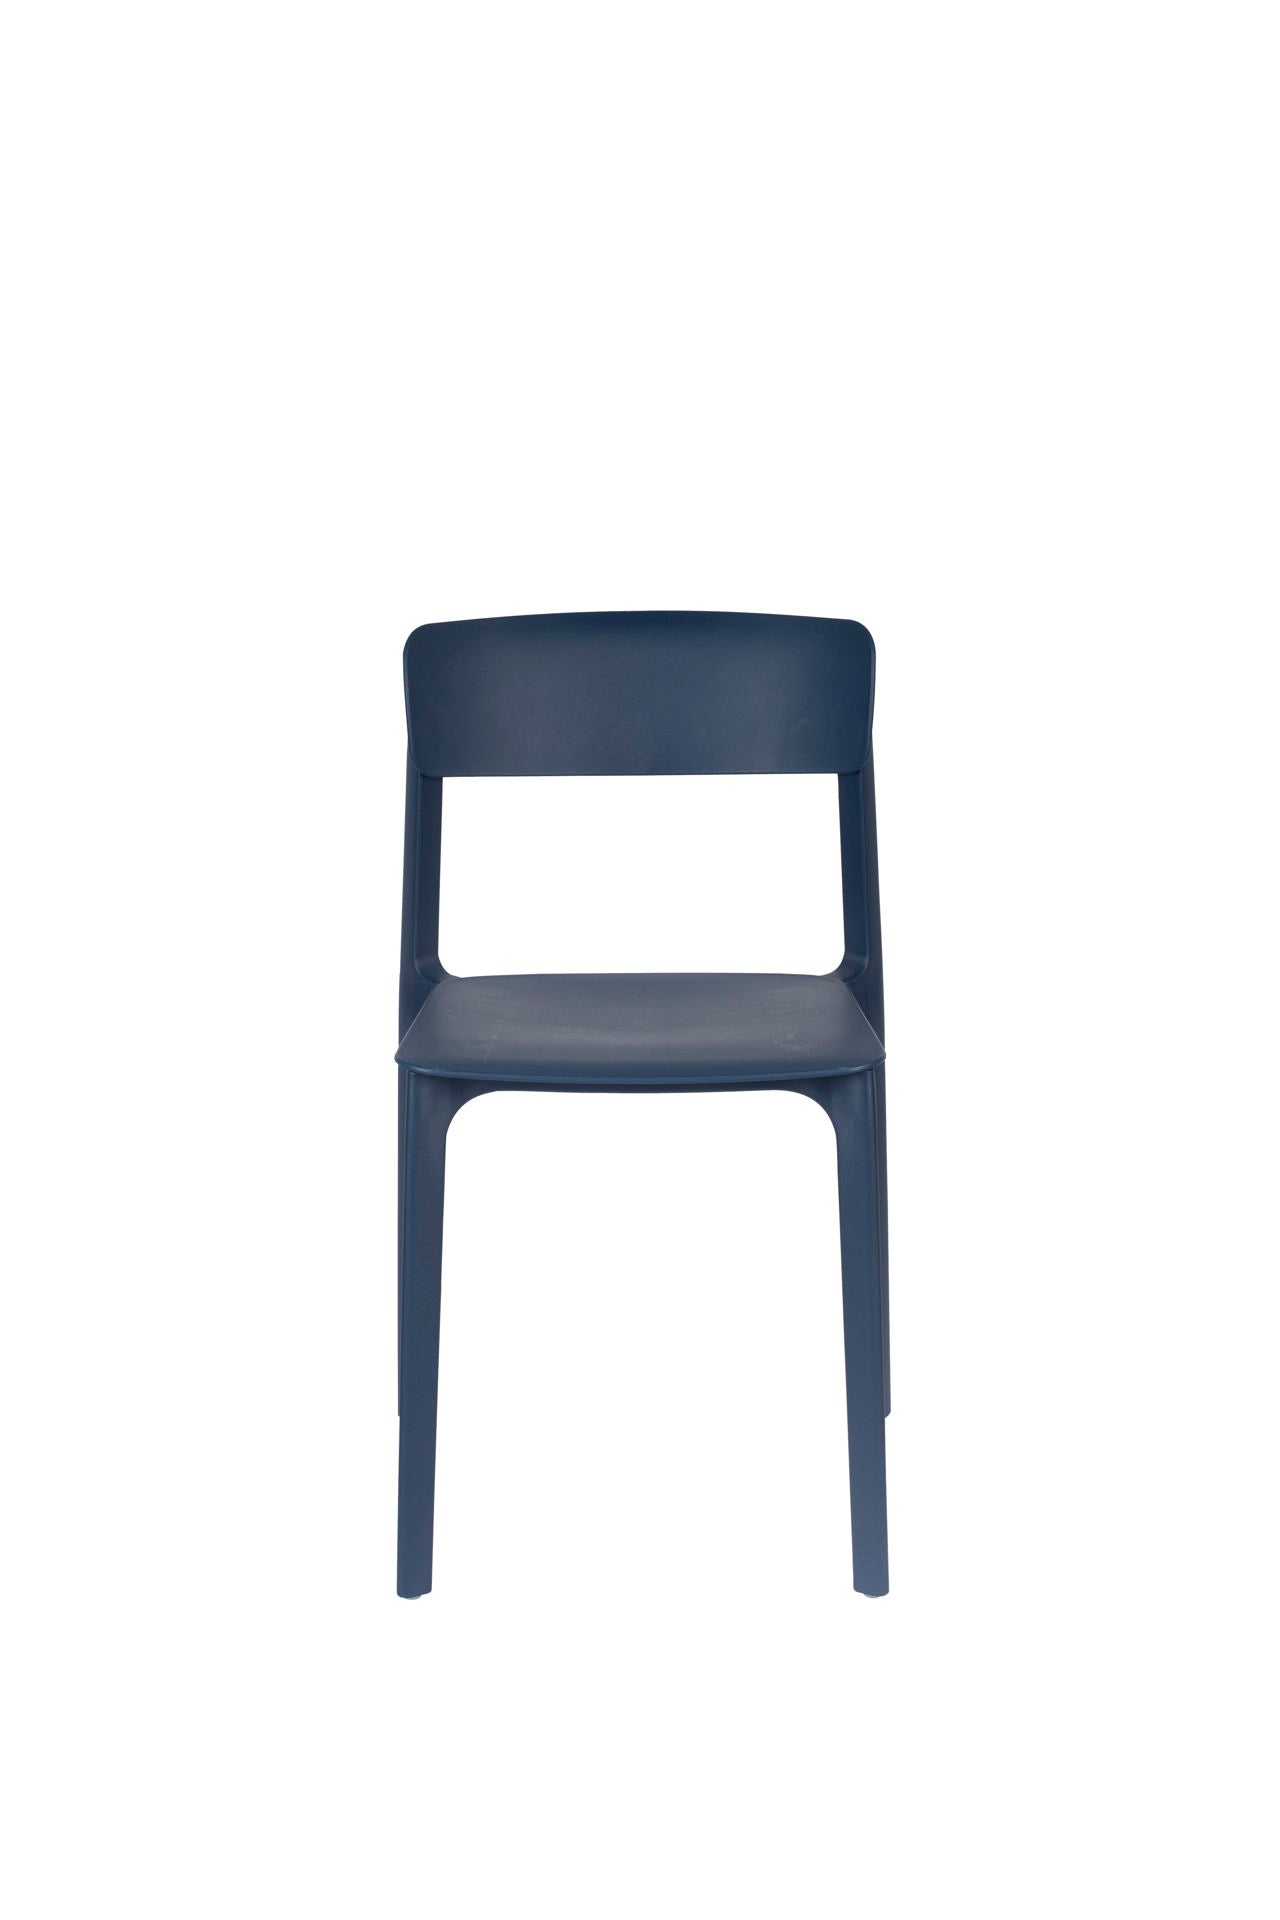 Nancy's Elsmere Chair - Retro - Blue - Polypropylene, Plastic - 47 cm x 48 cm x 94 cm